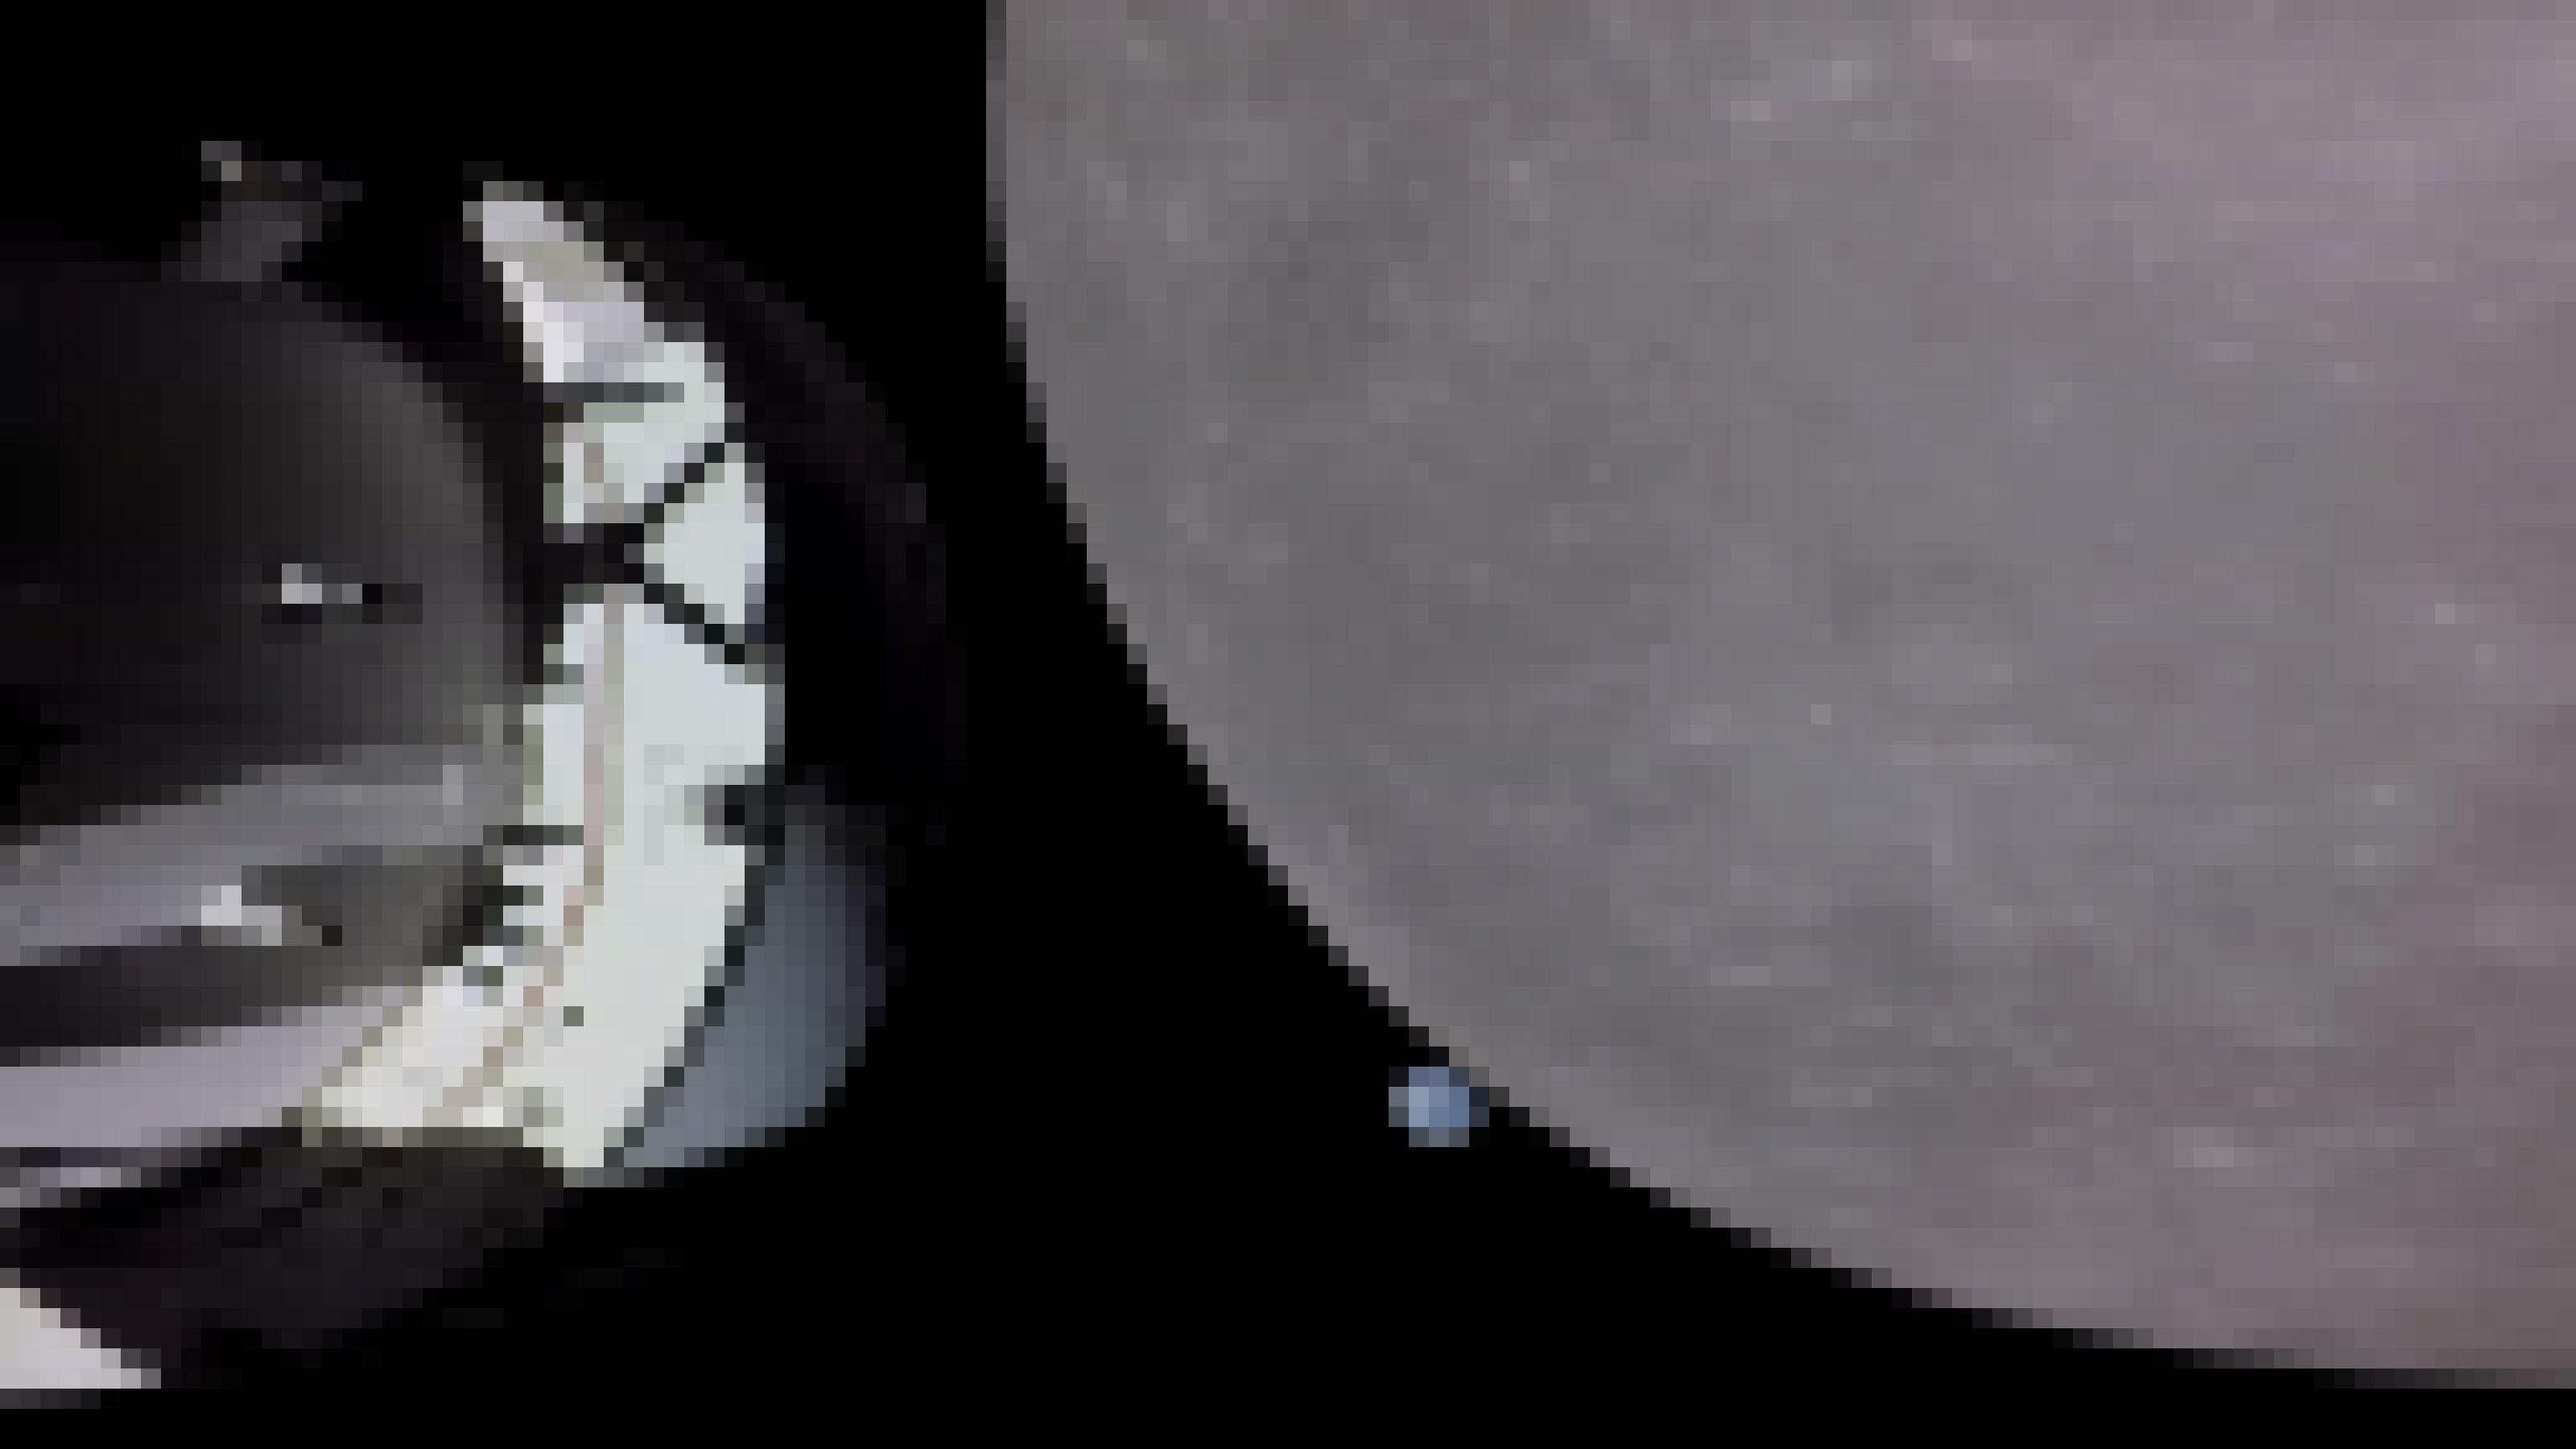 Links im Bild ist ein Teil des Raummoduls Artemis zu sehen, auf der rechten Seite nimmt ein Ausschnitt des Mondes etwa zwei Drittel der Bildfläche ein. Neben dem Mondrand erscheint die weit im Hintergrund befindliche Erde als kleine blaue Kugel..